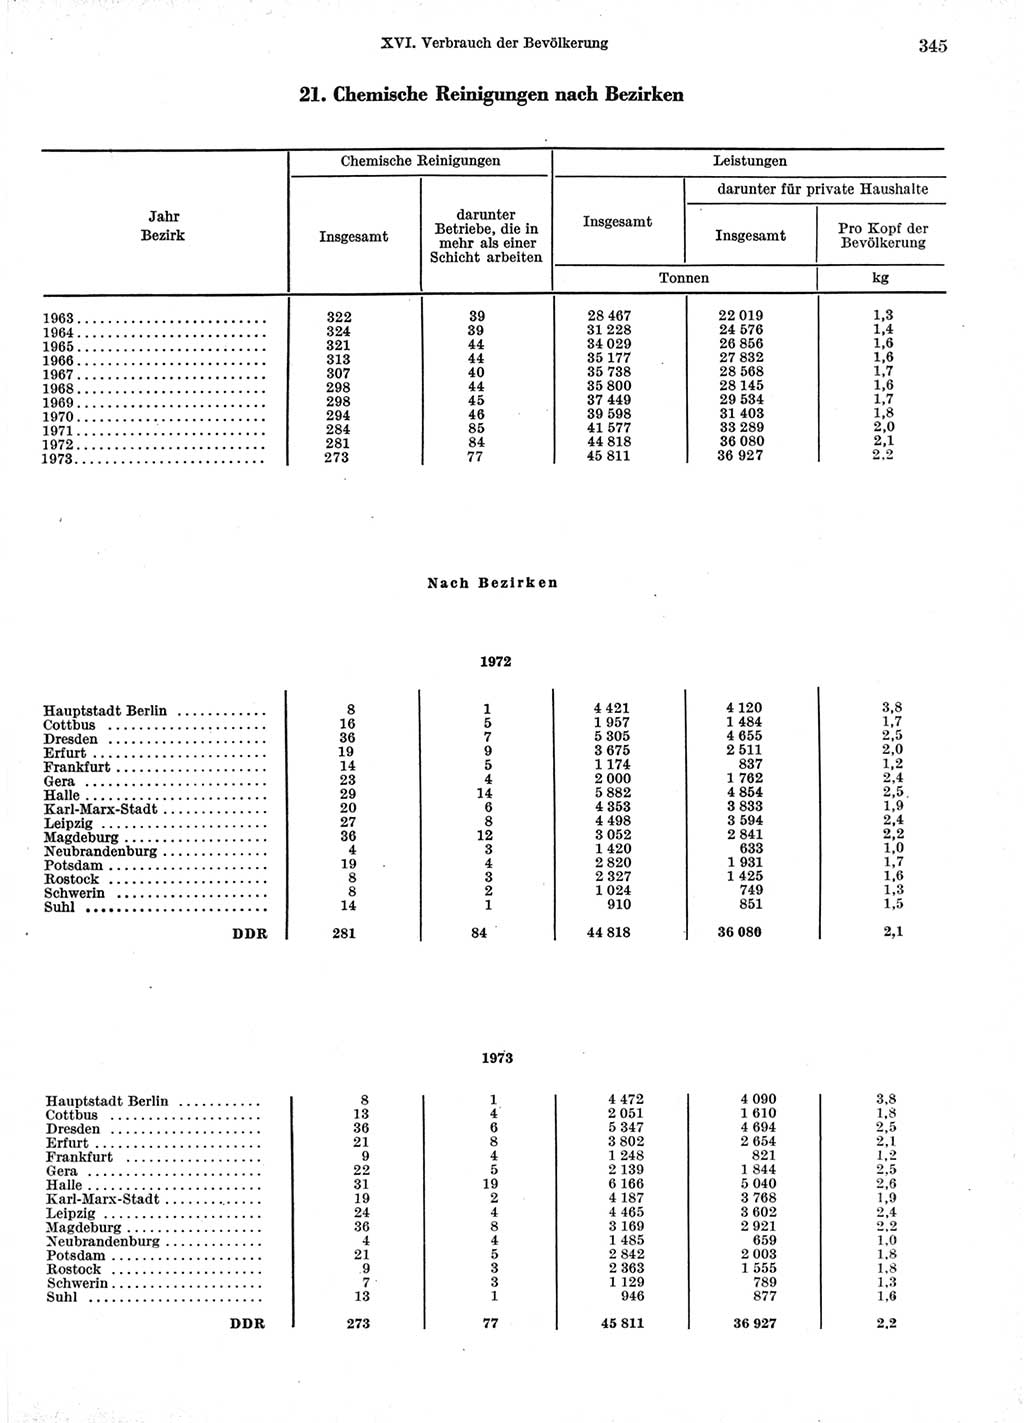 Statistisches Jahrbuch der Deutschen Demokratischen Republik (DDR) 1974, Seite 345 (Stat. Jb. DDR 1974, S. 345)